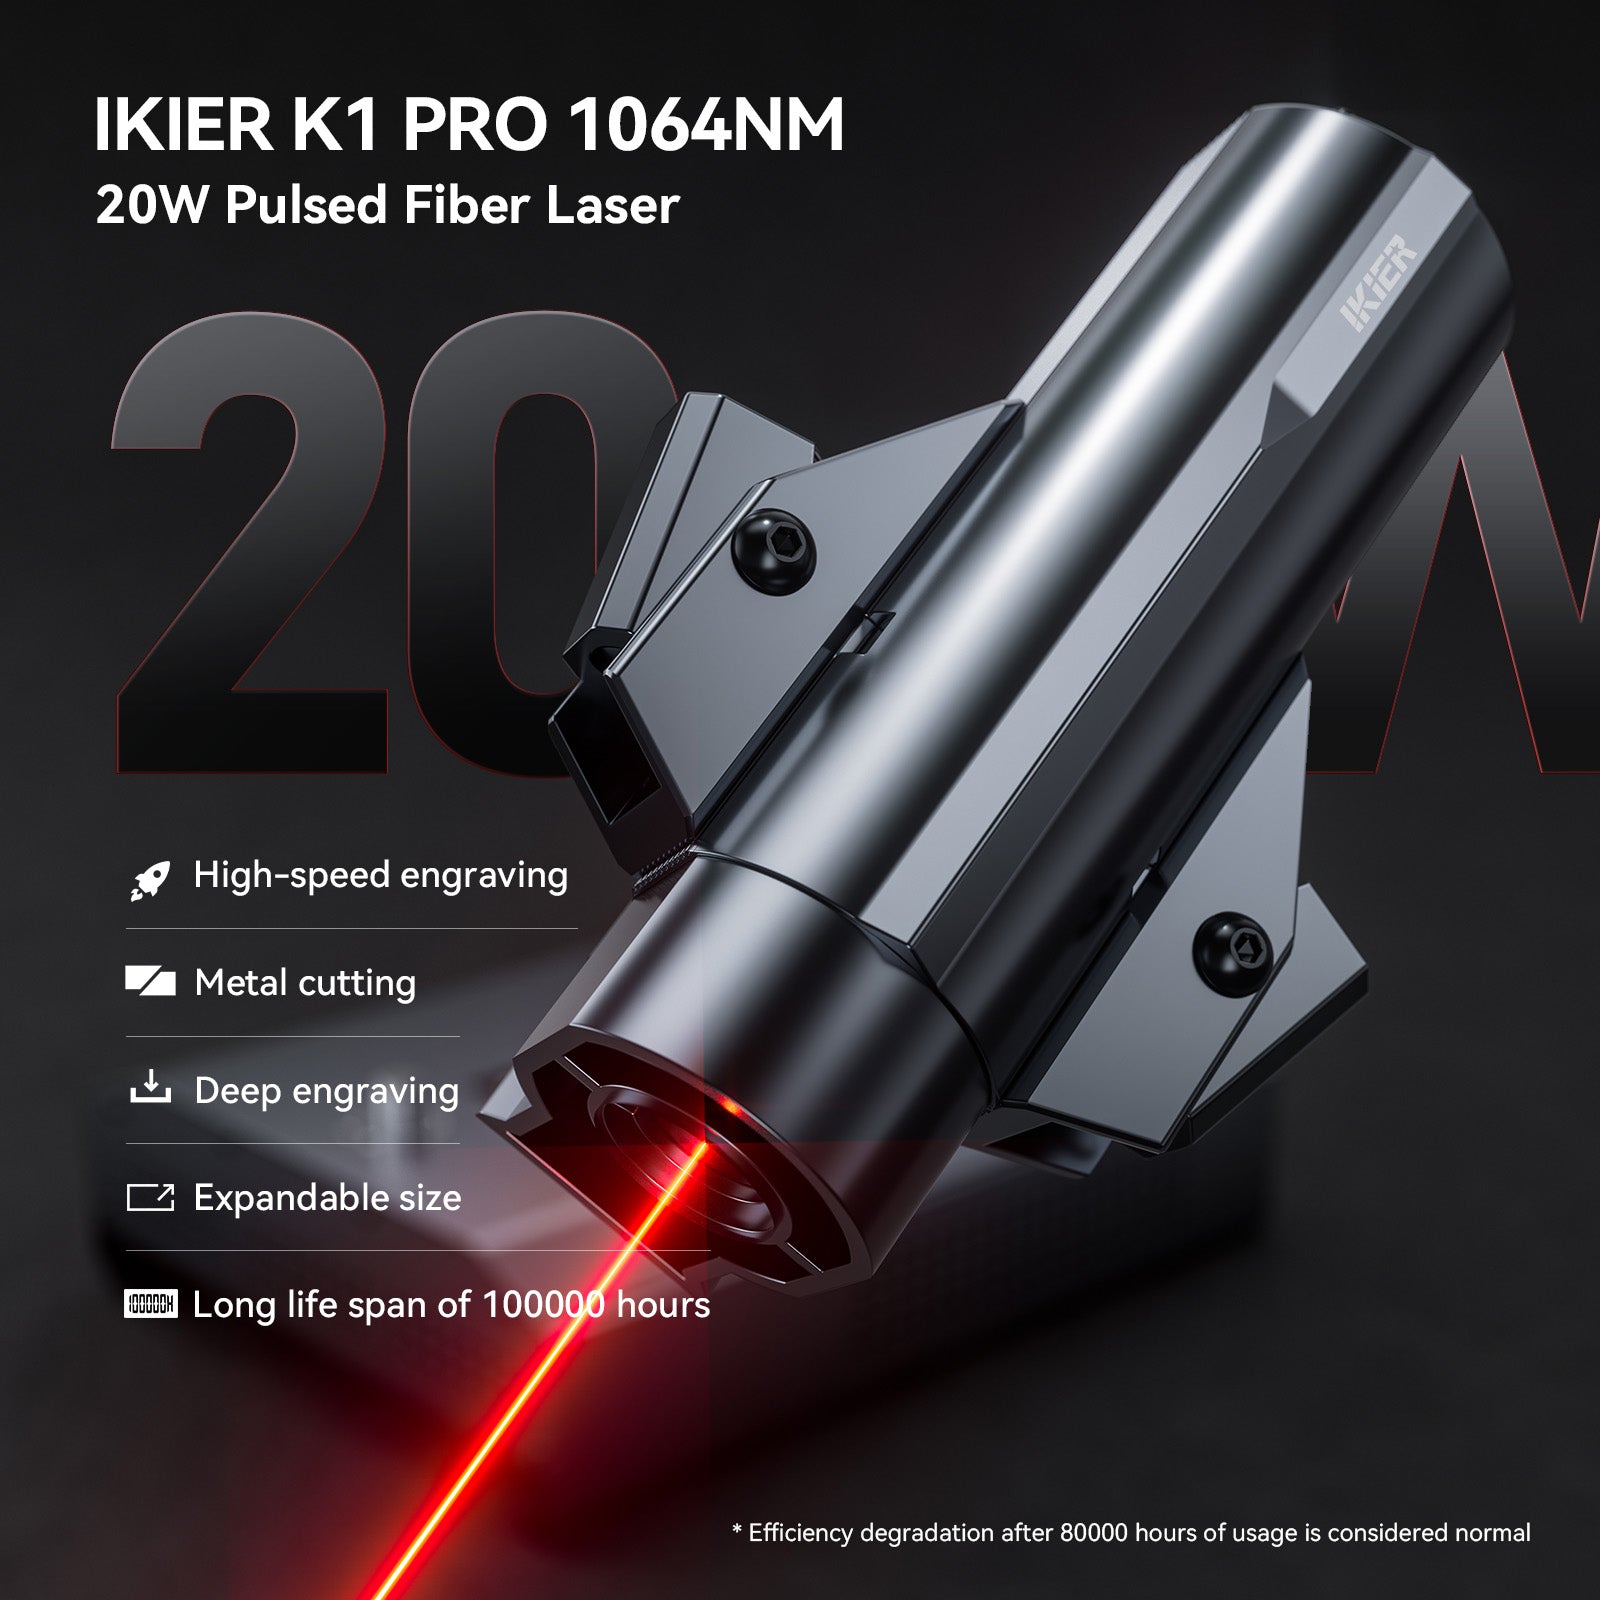 iKier K1 Pro 1064nm 20W Fiber Laser Marking and Engraving Machine